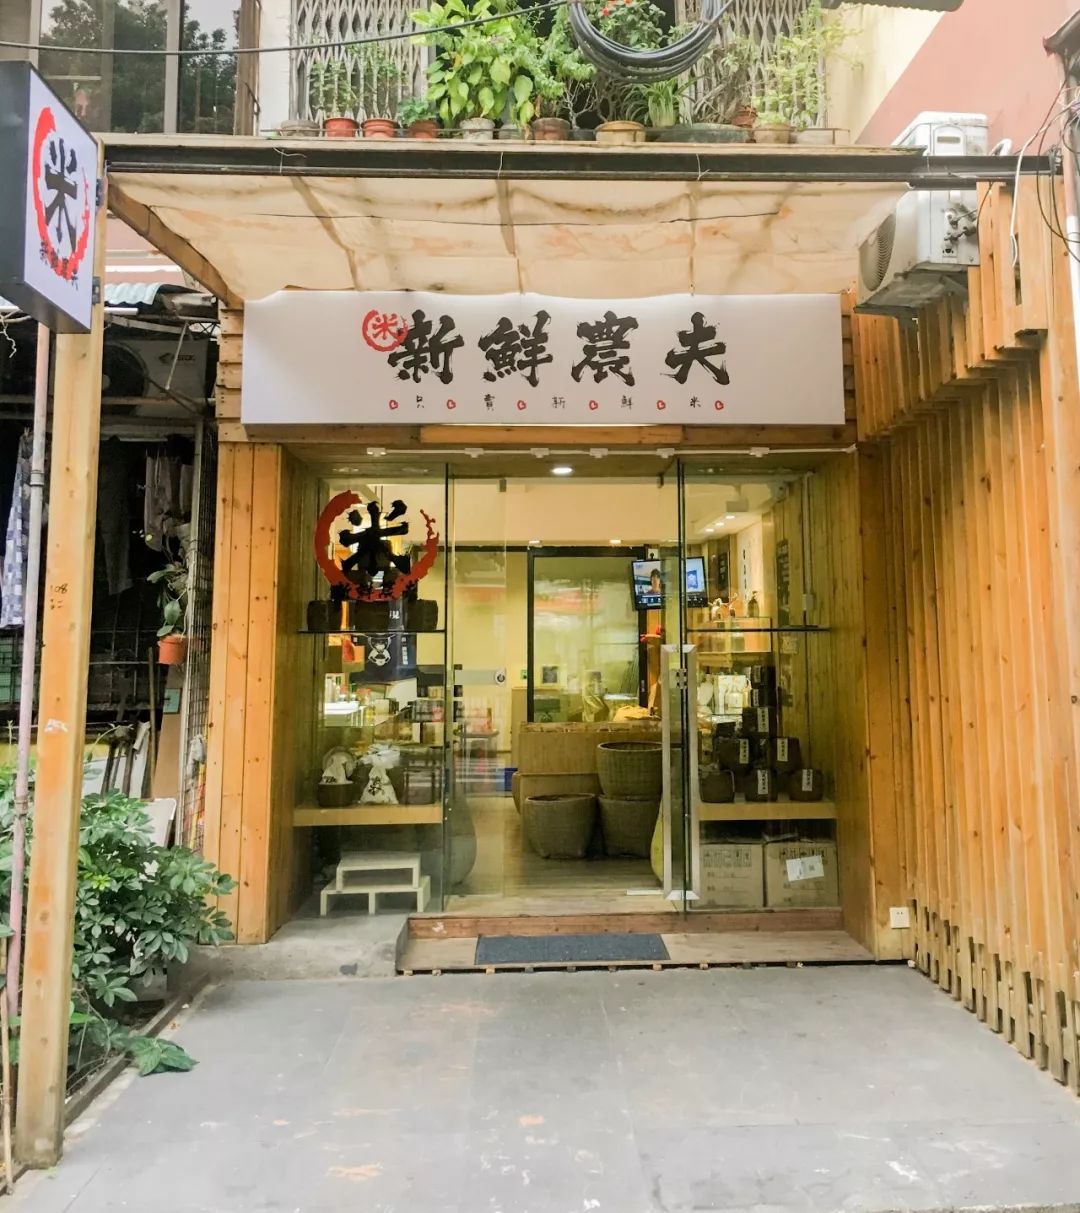 不用去日本,"爱马仕"网红米店广州也有了